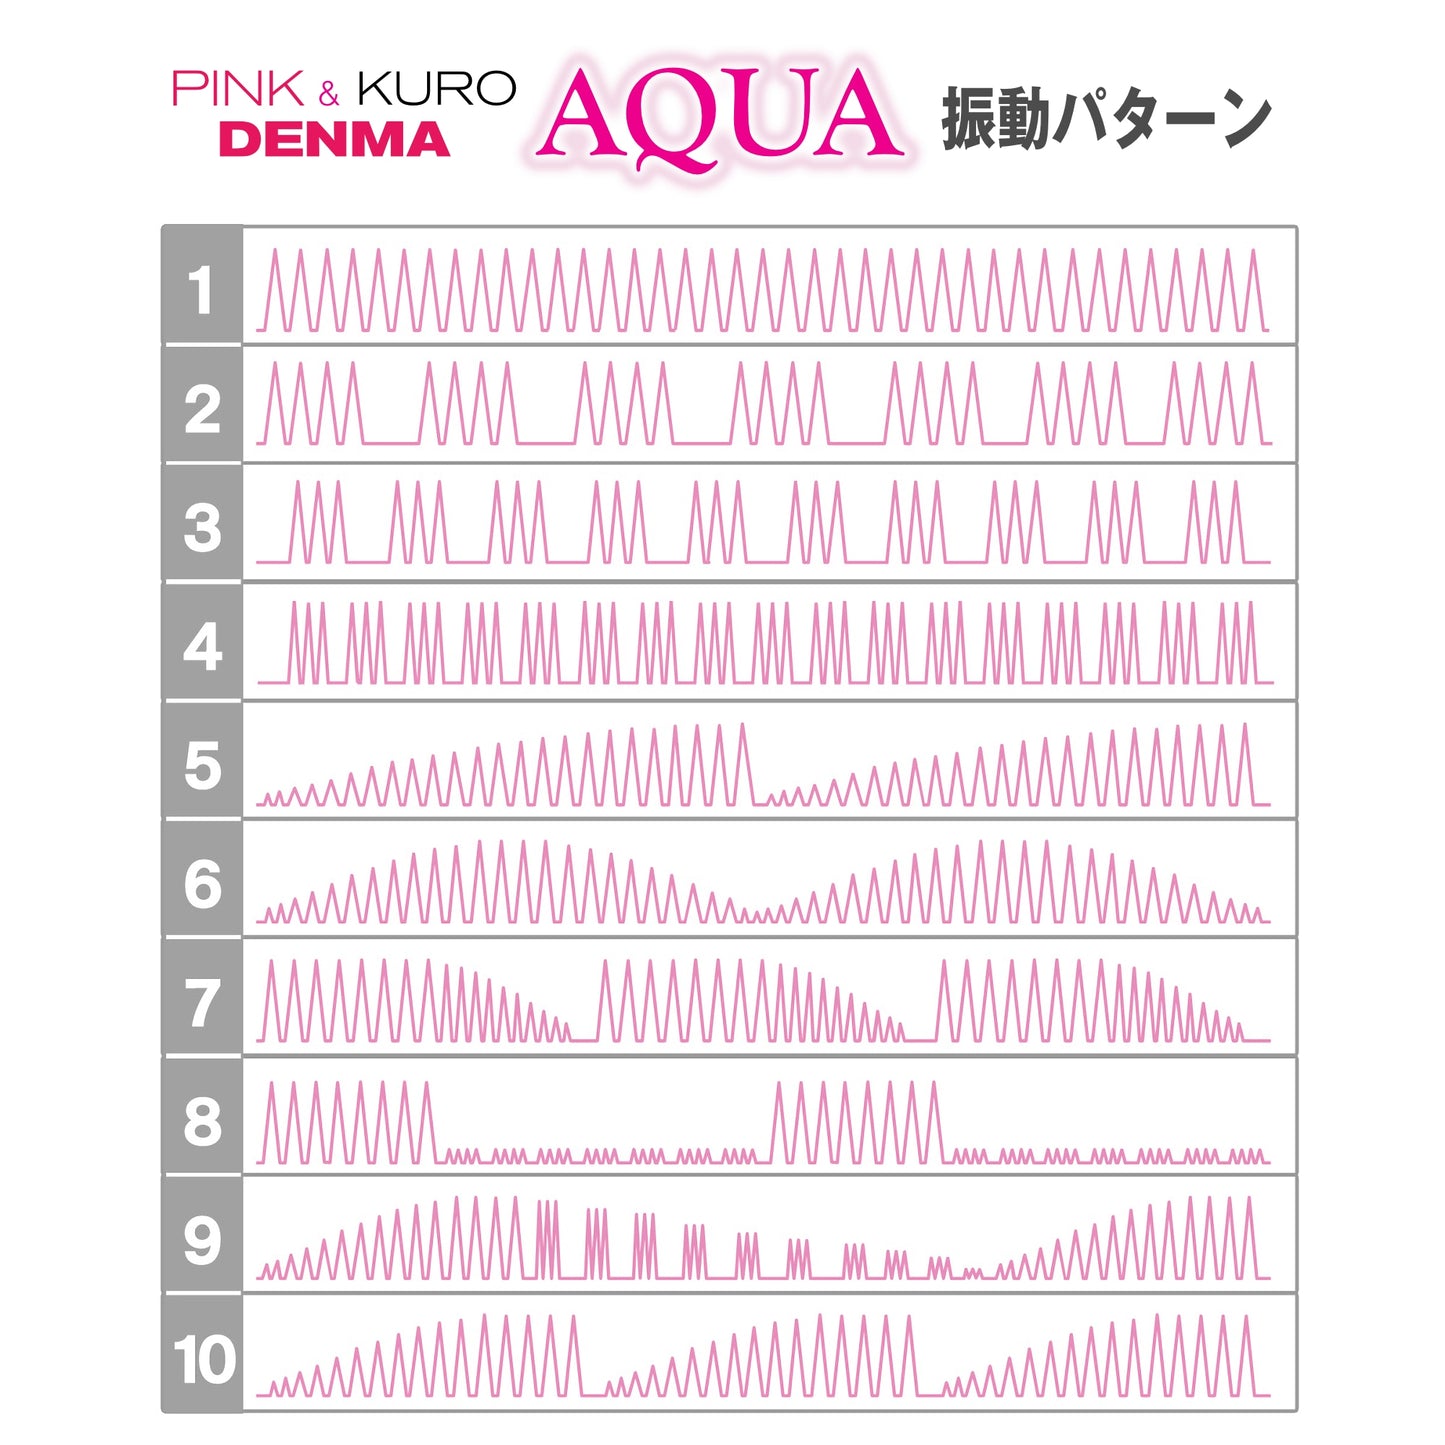 Pink Denma Aqua 防水AV按摩棒 粉紅色